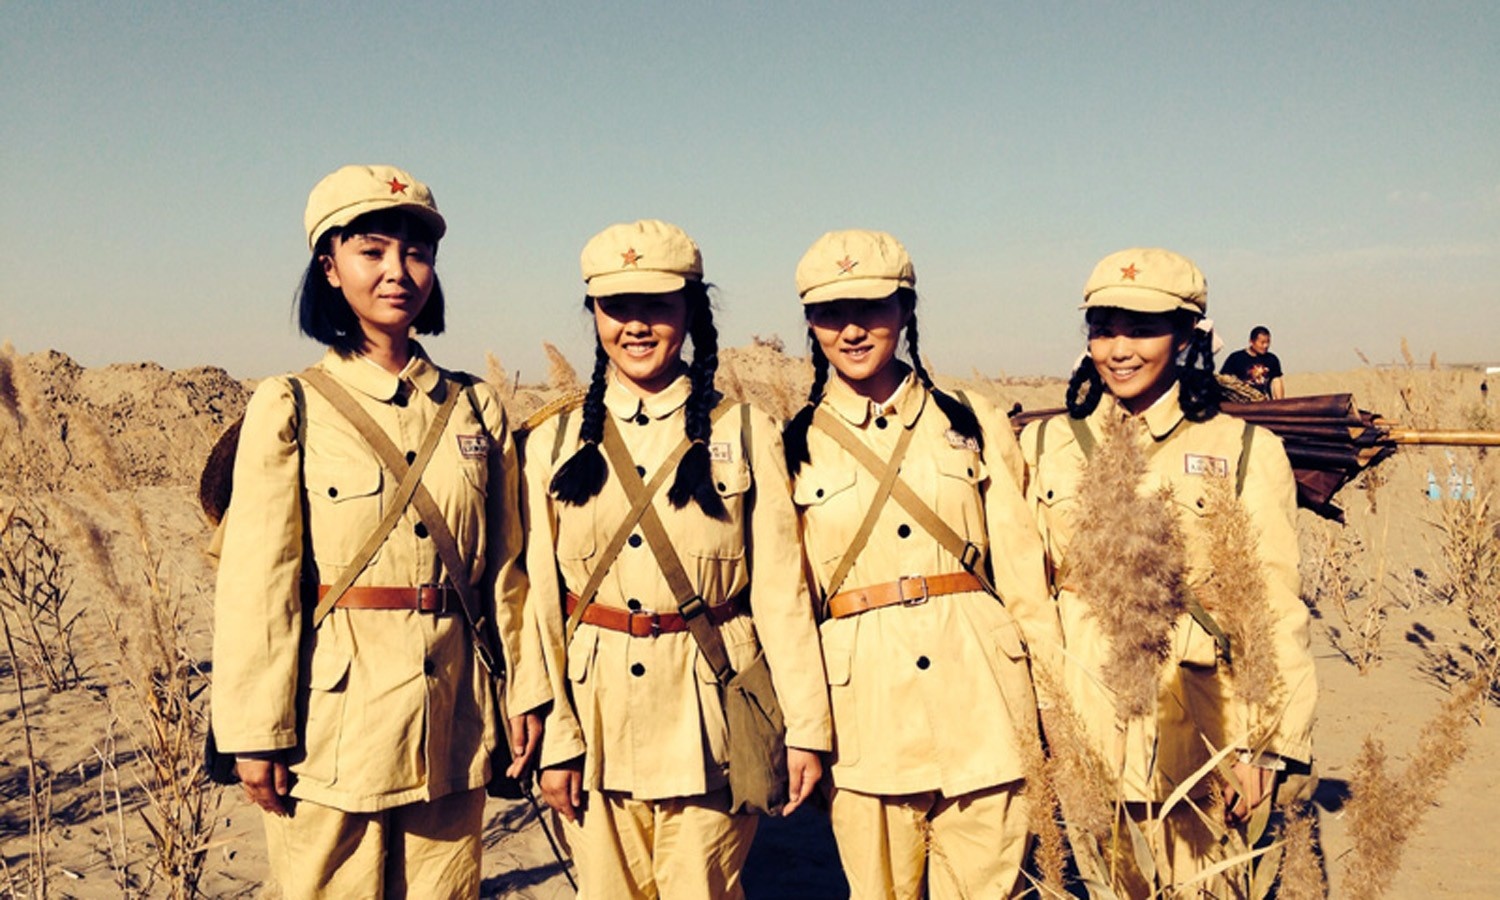 《我的处女地》取材于新疆兵团第一师的创业史